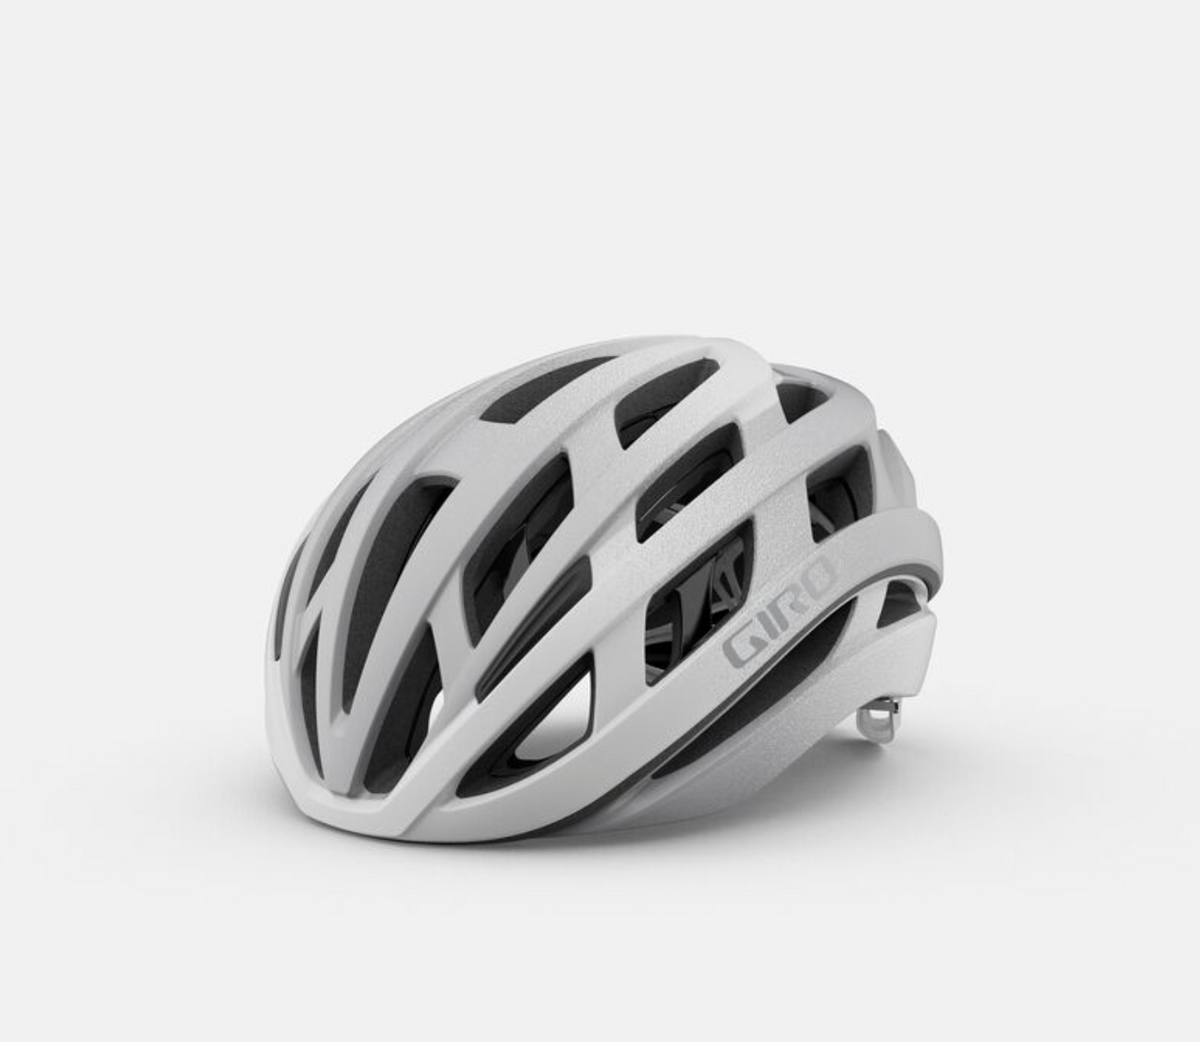 Giro Helios Spherical Helmet